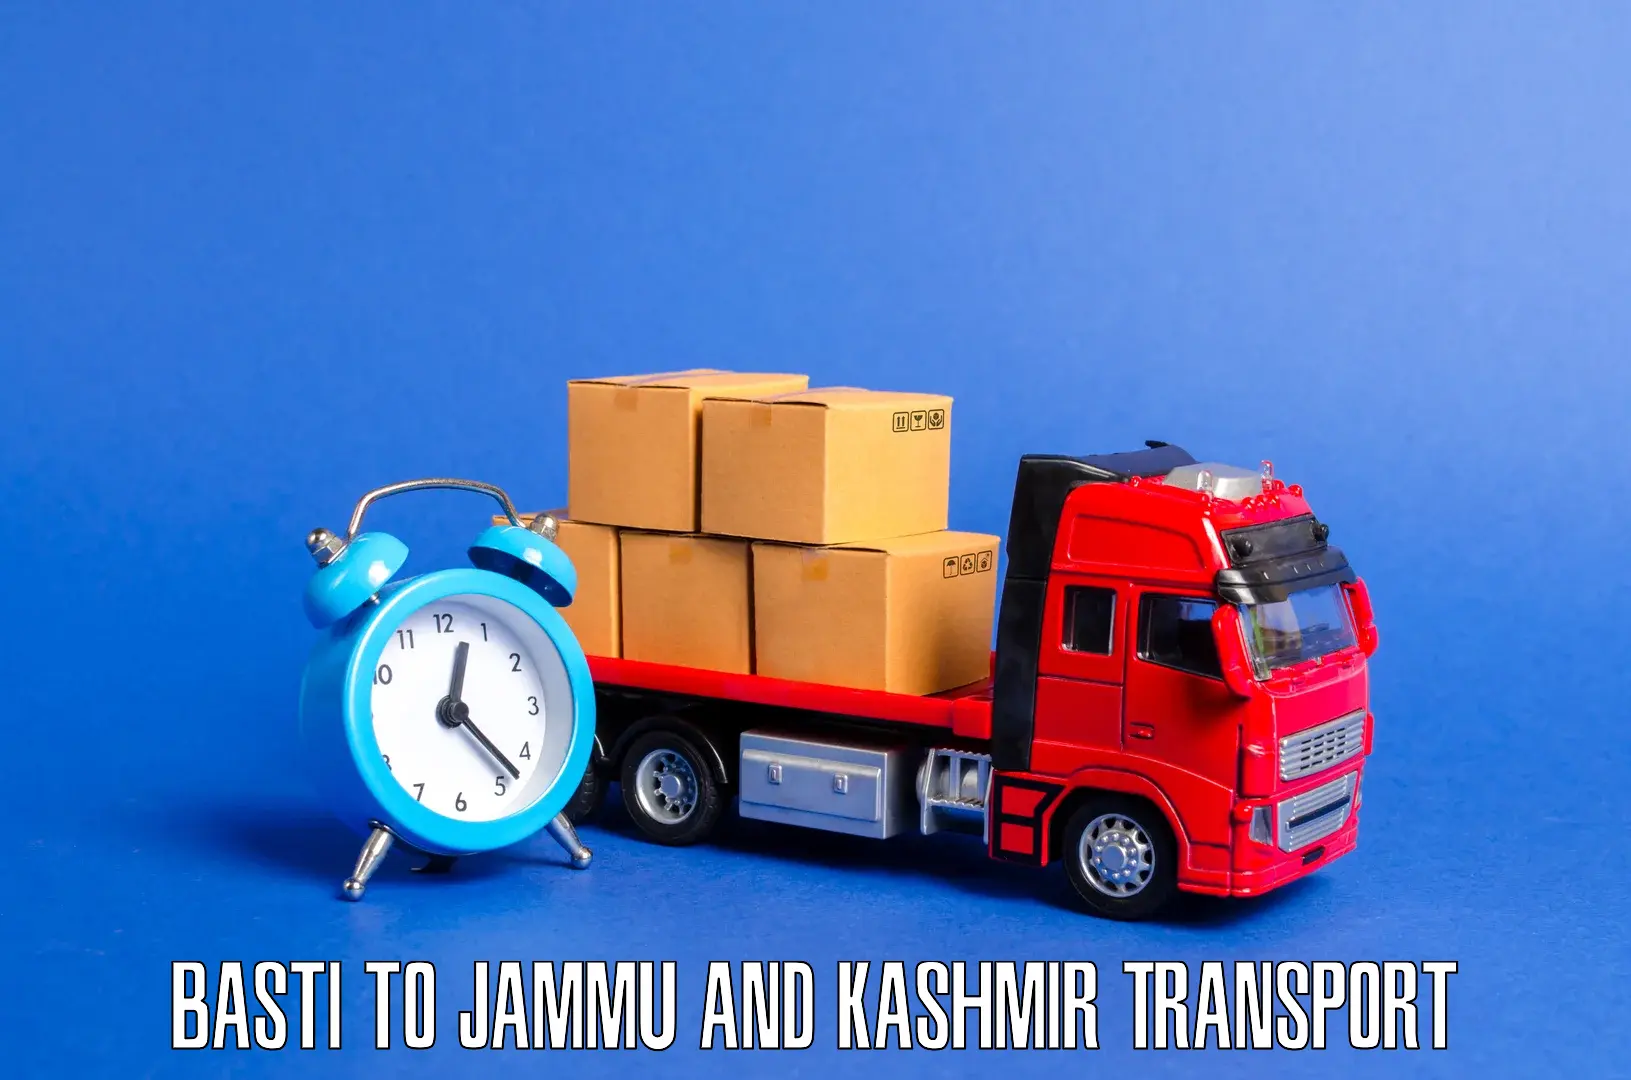 Bike transport service Basti to Jammu